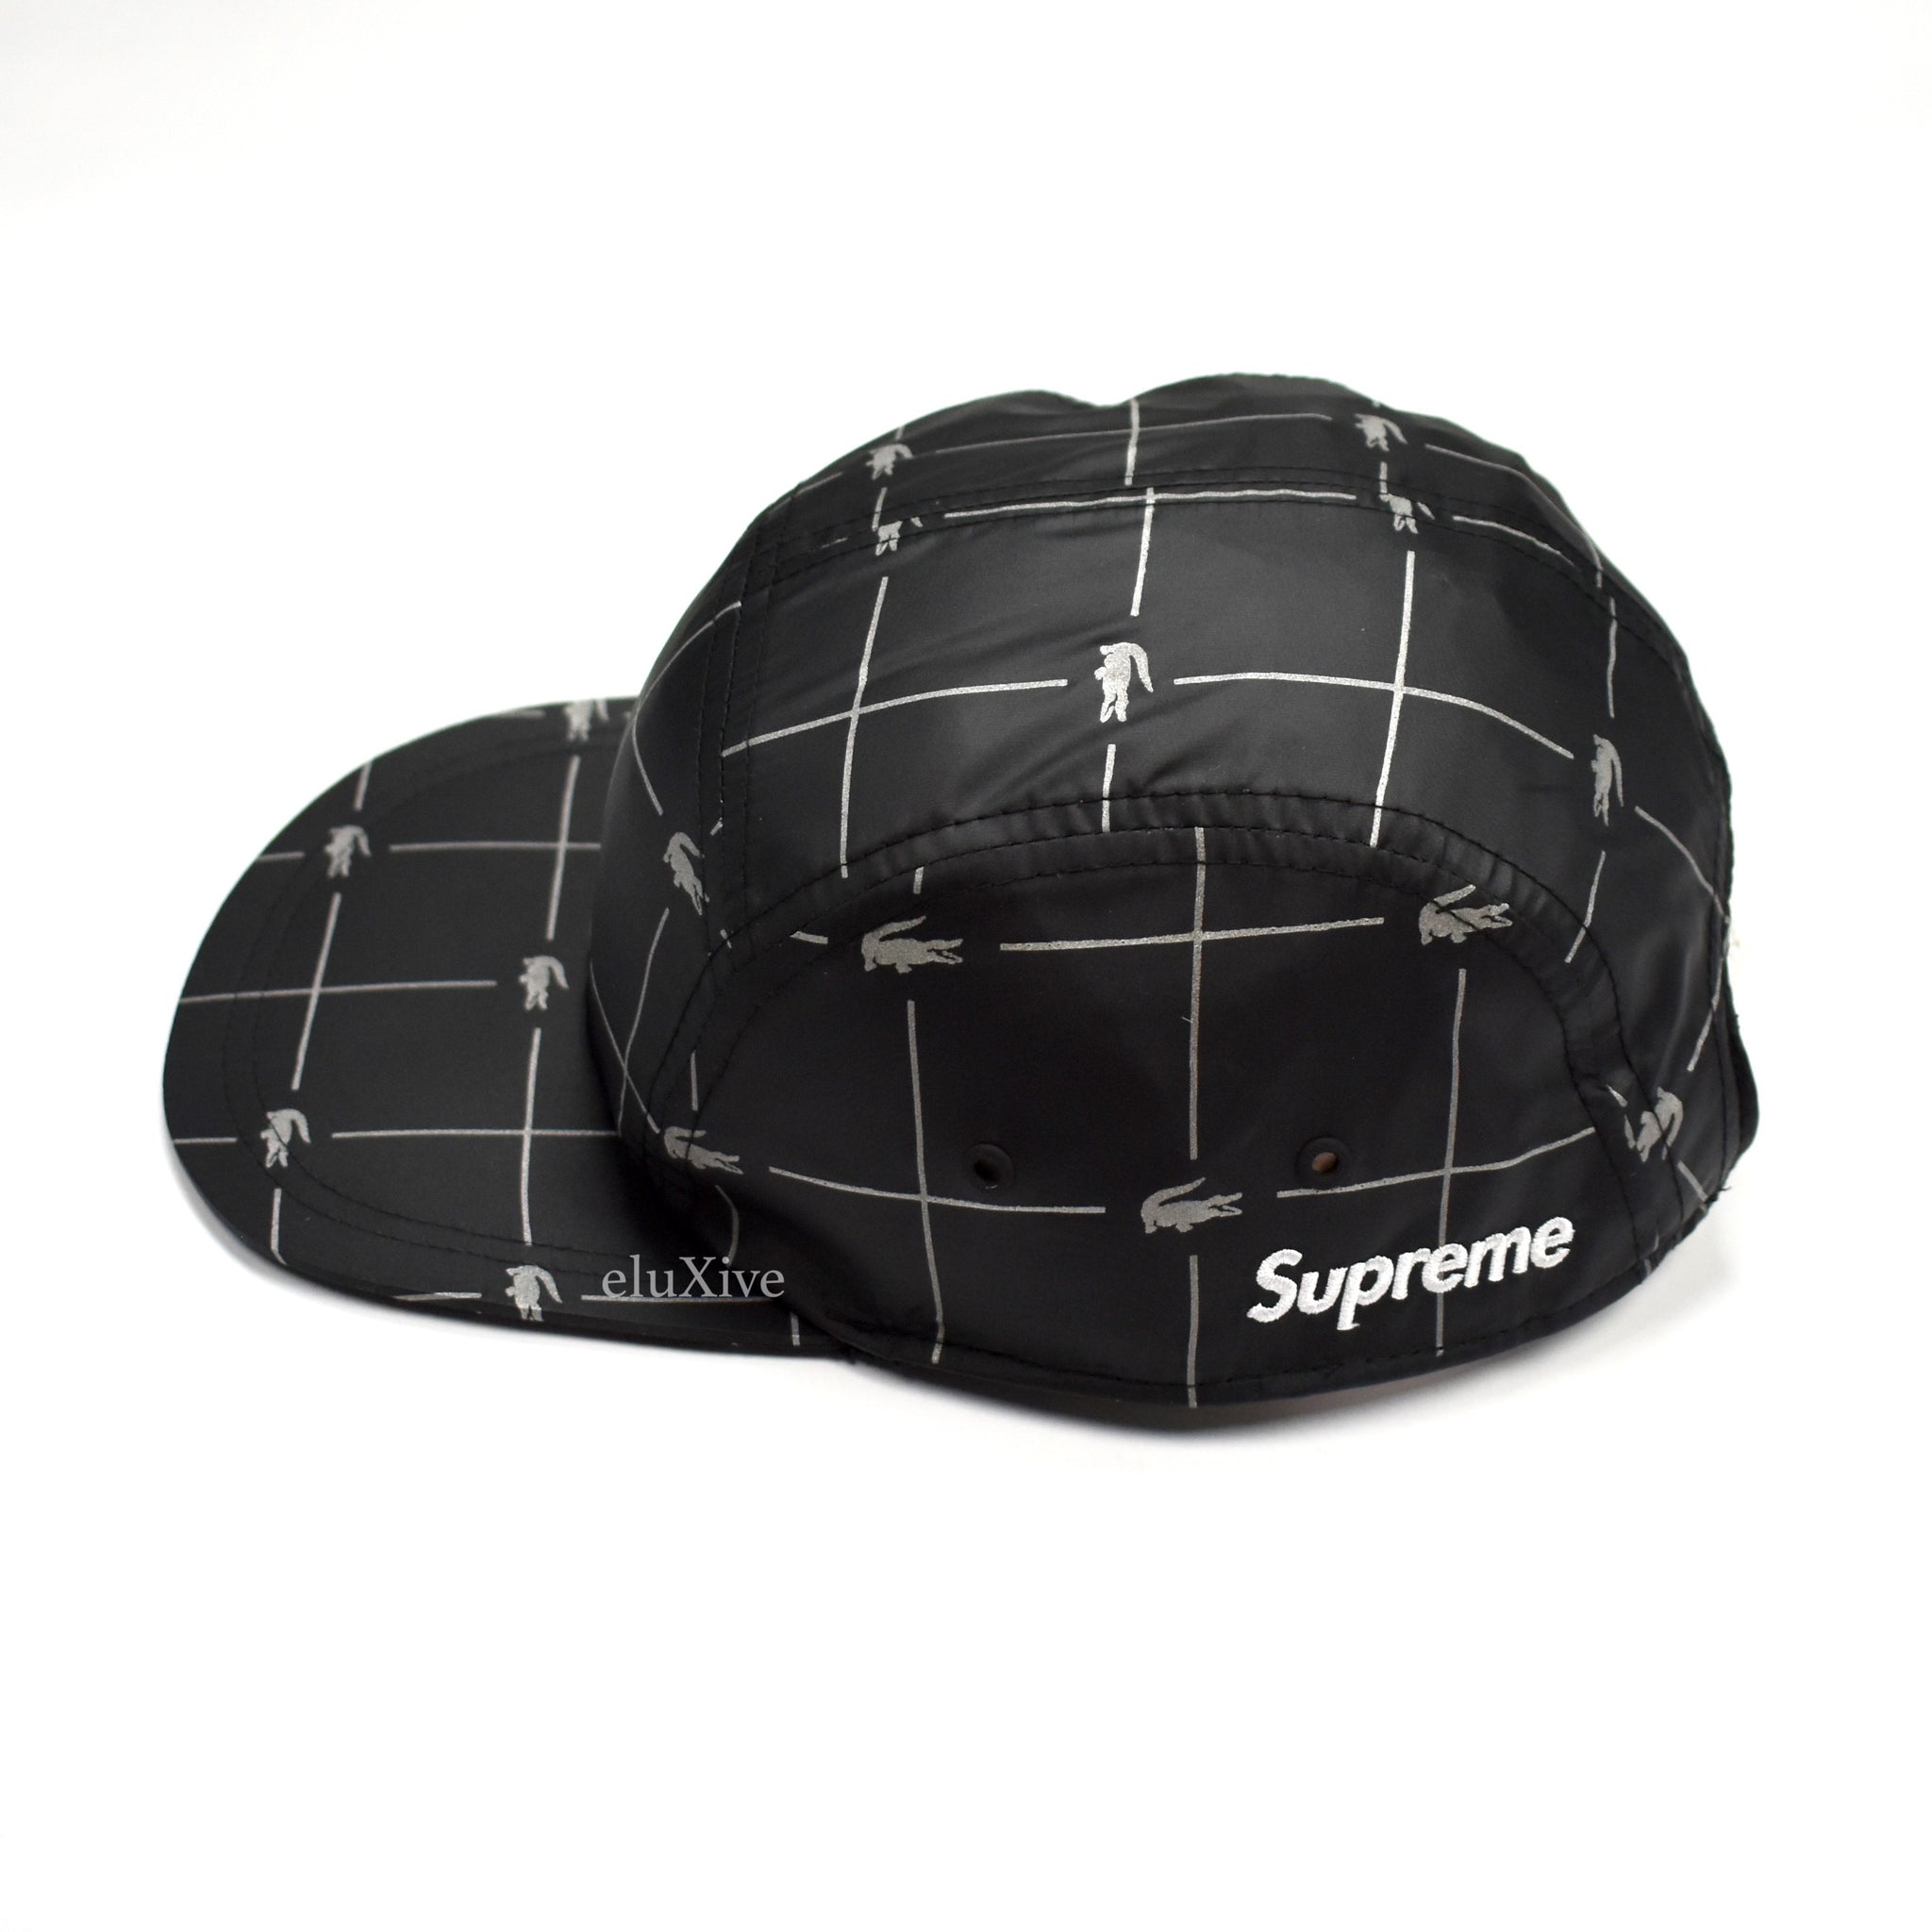 lacoste x supreme hat